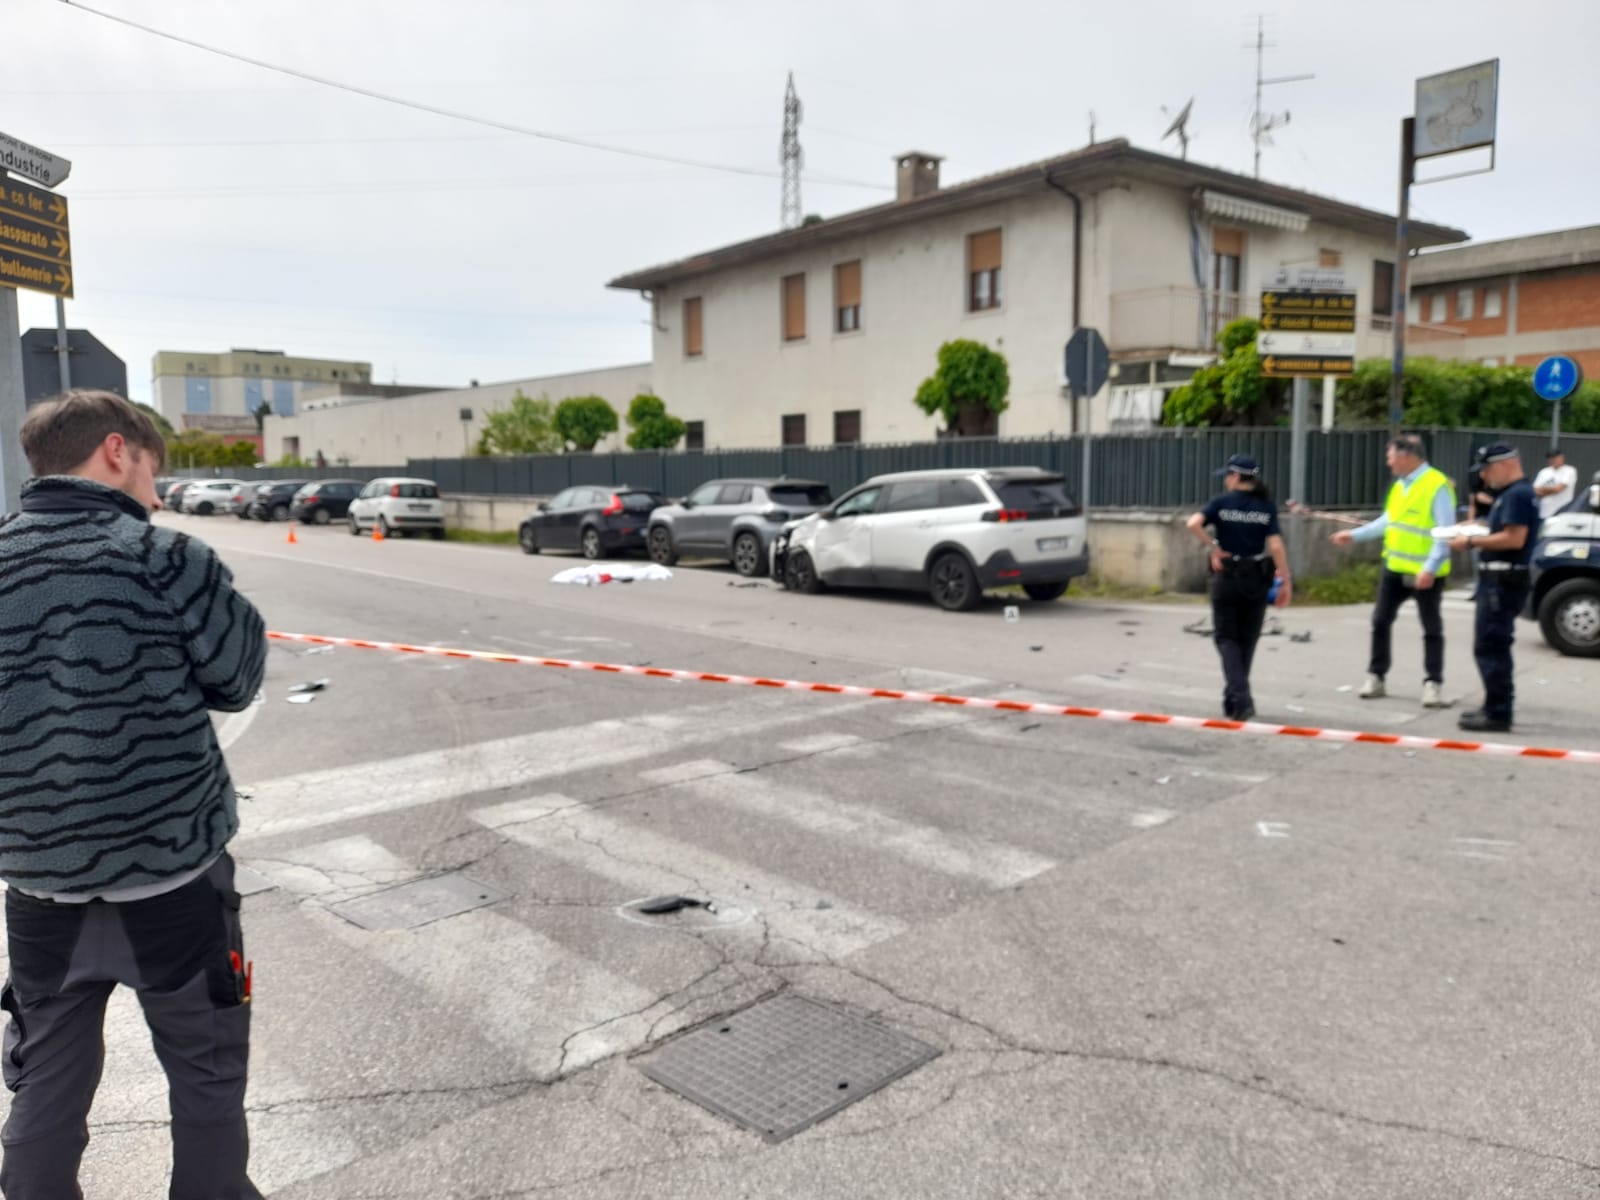 Incidente mortale fra via Chioda e via Torricelli: è la sesta vittima da gennaio ad oggi